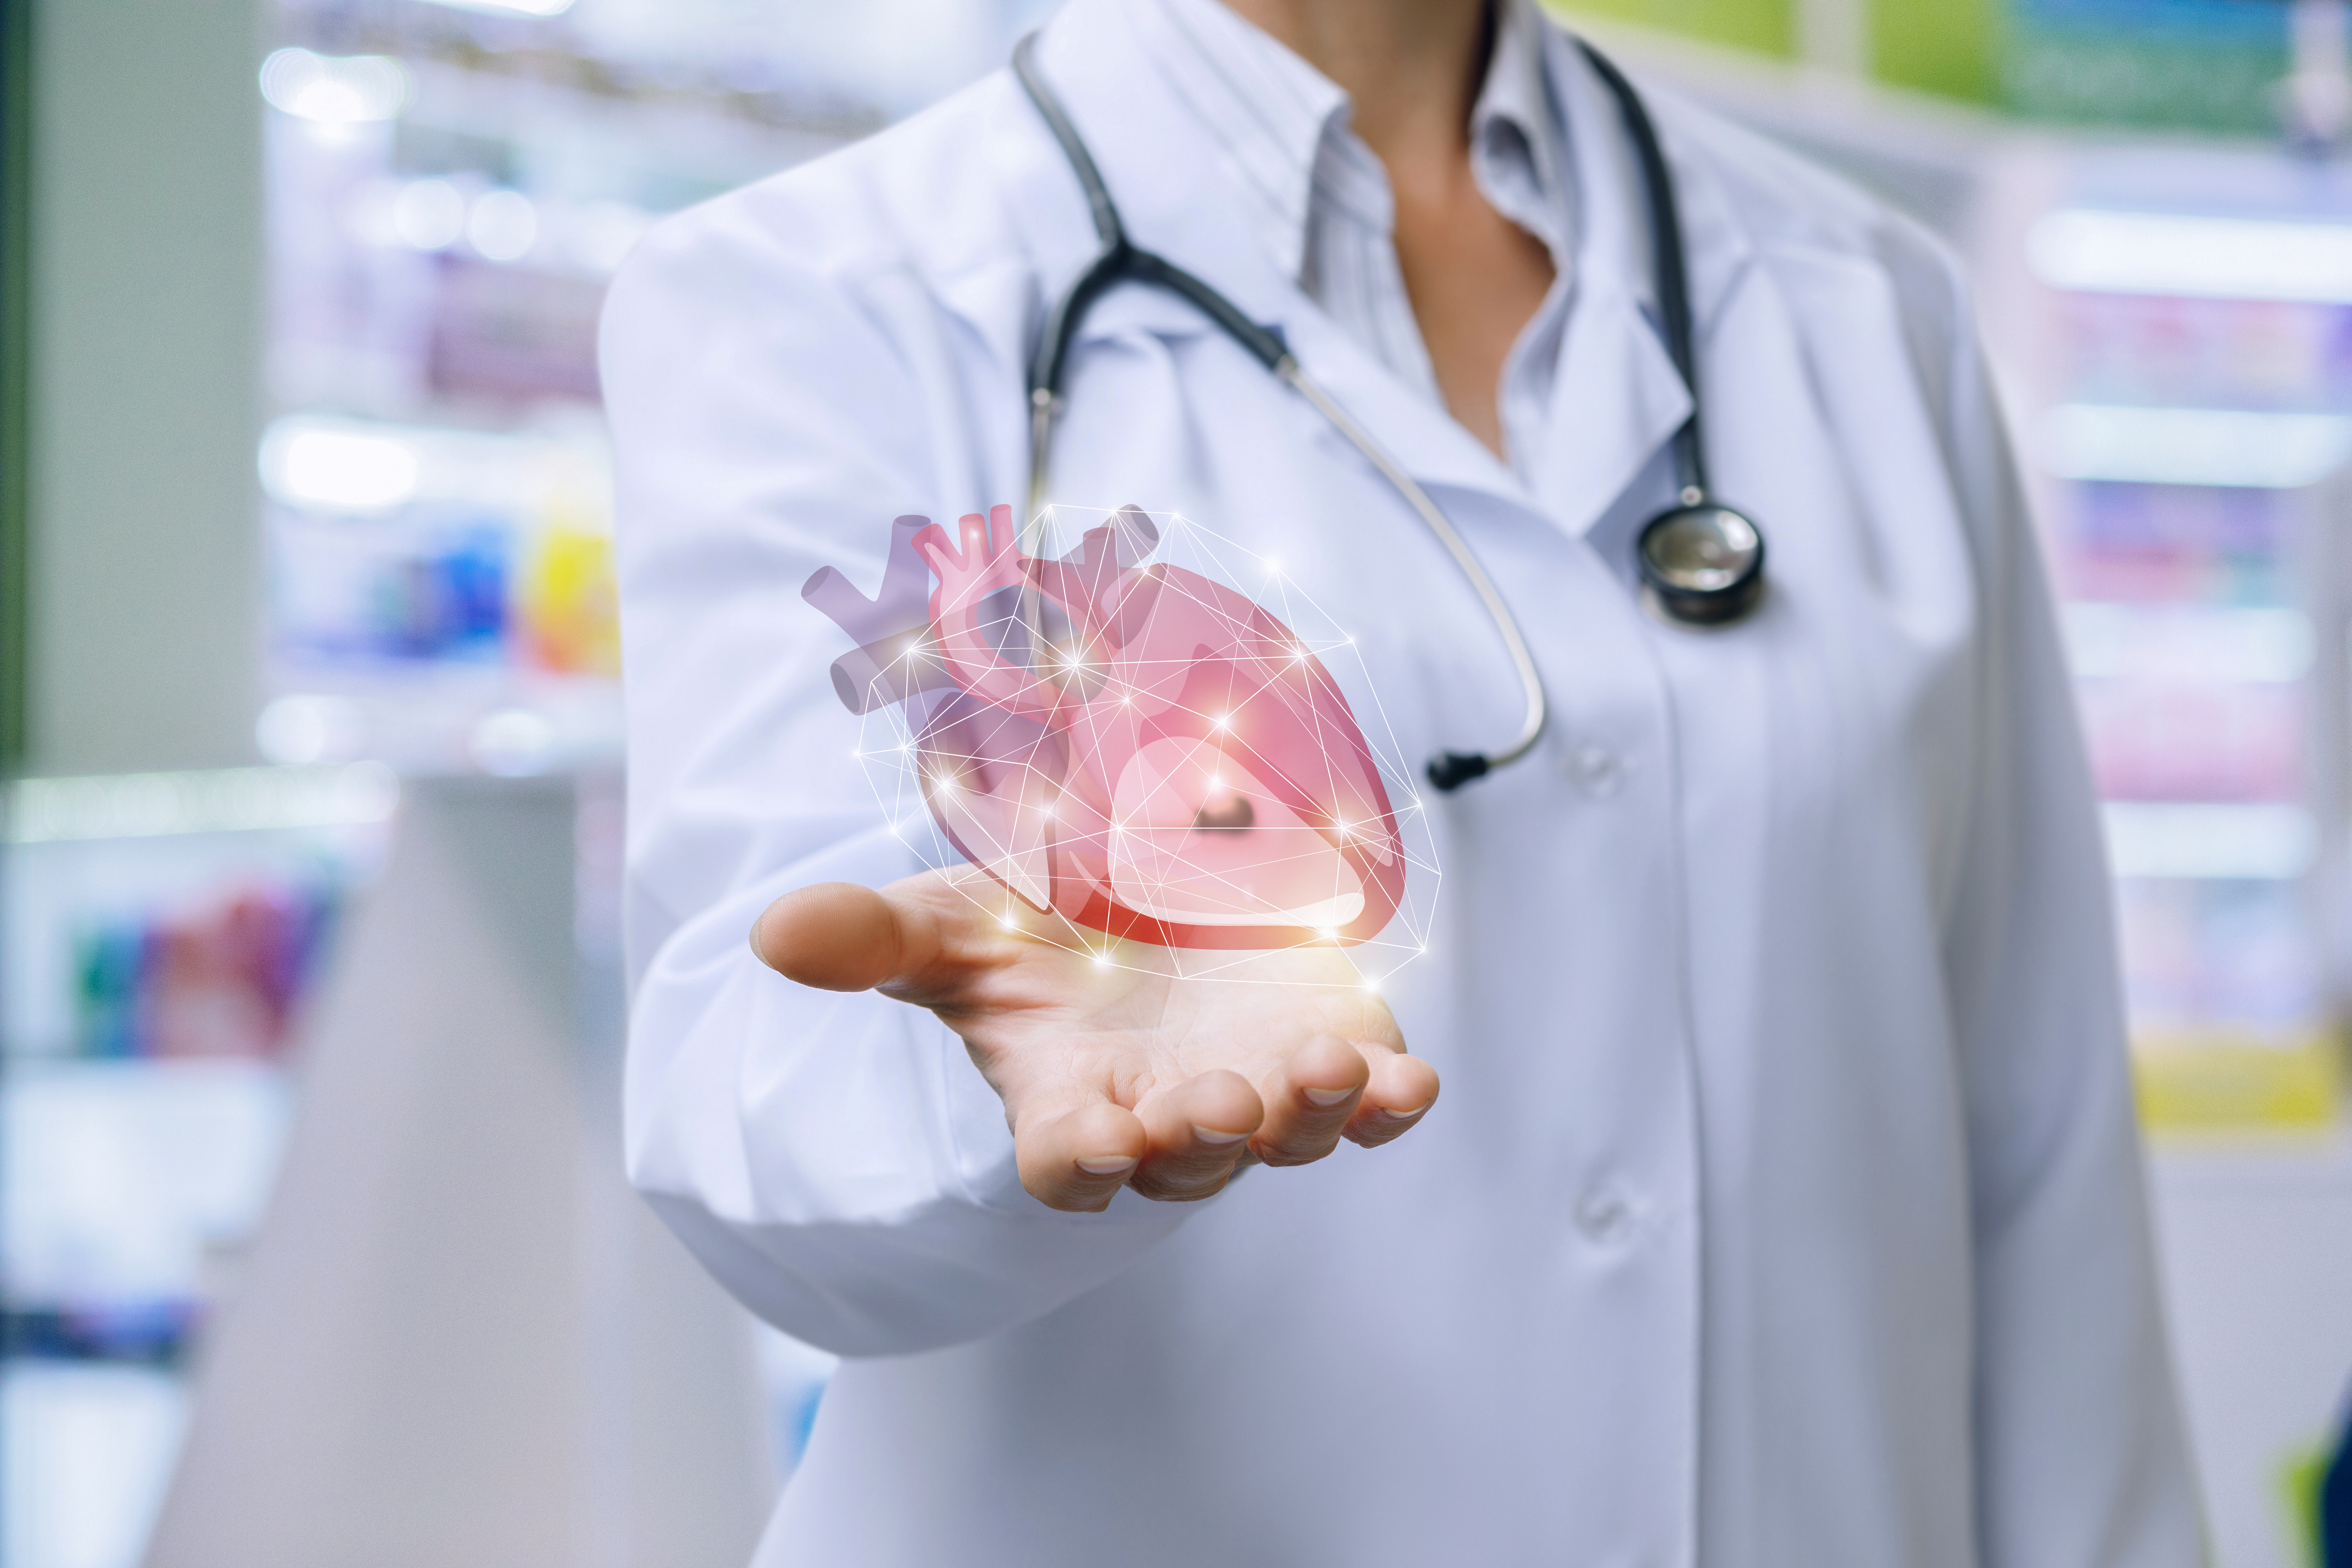 De acuerdo a la evidencia reunida, la infección por SARS-CoV-2 puede dañar el corazón tanto directa como indirectamente (Shutterstock)
